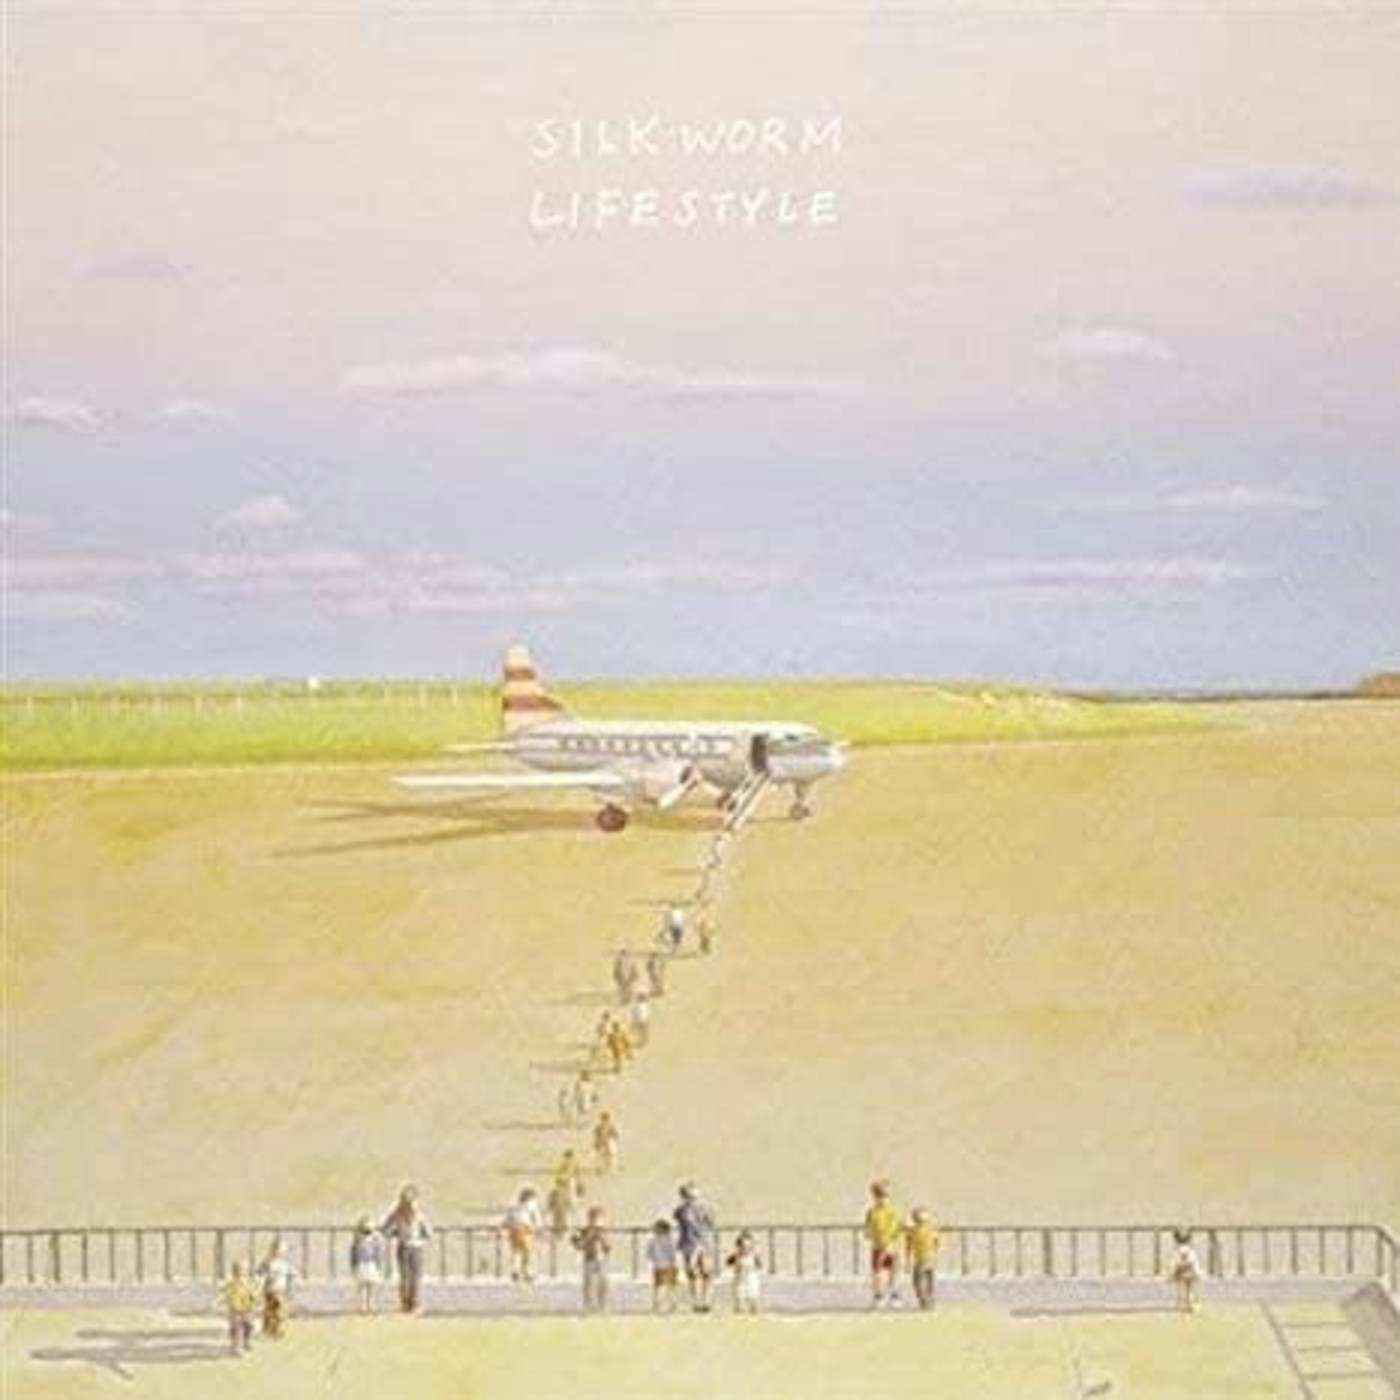 Silkworm LIFESTYLE (PINK VINYL) Vinyl Record